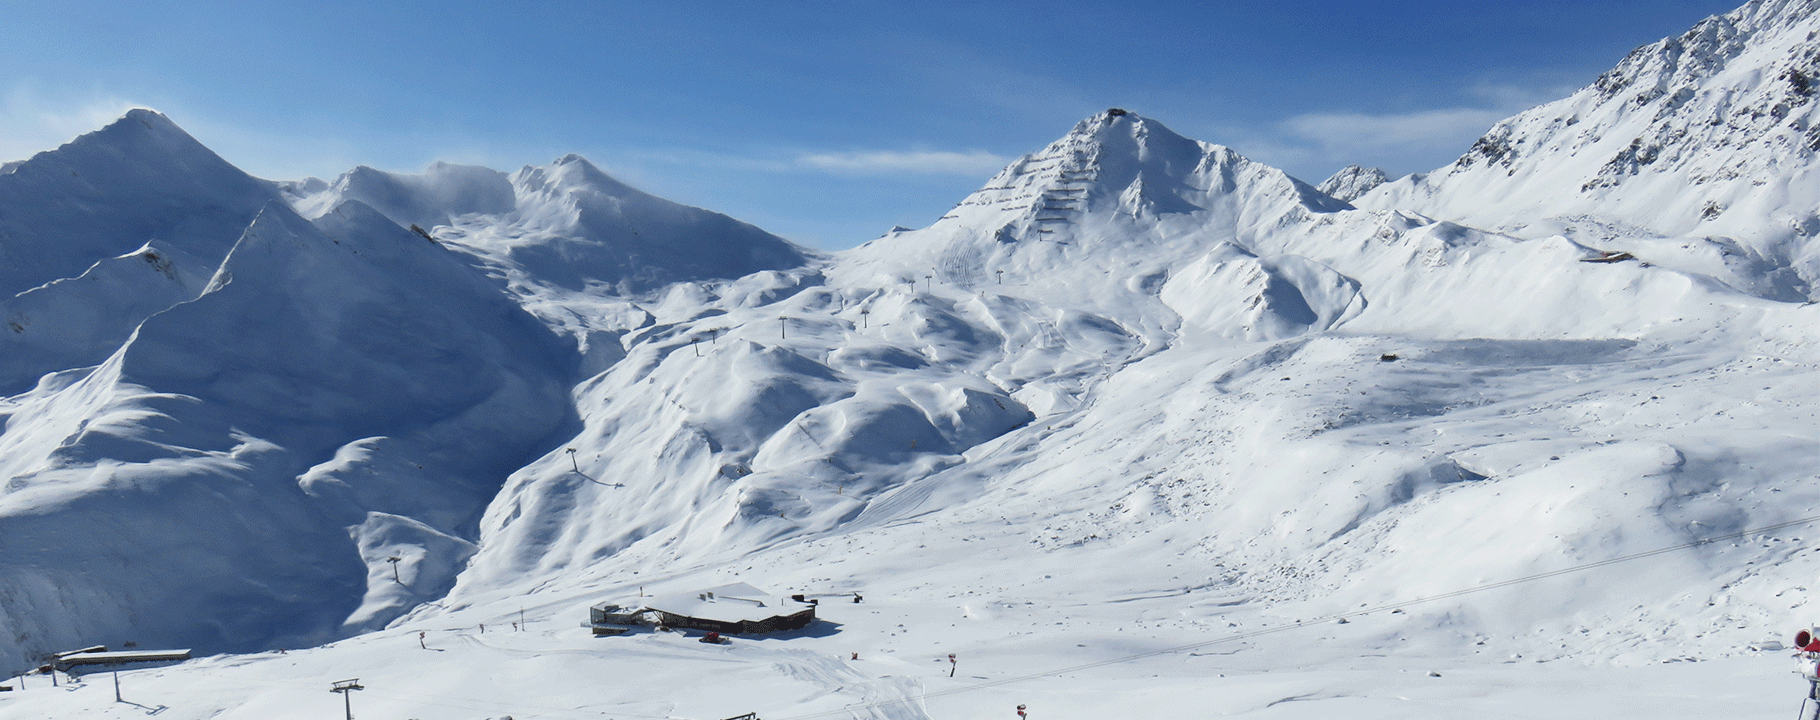 Das Masnergebiet im Familien Skigebiet Serfaus-Fiss-Ladis in Tirol Österreich | © Serfaus-Fiss-Ladis Marketing GmbH | Andreas Kirschner